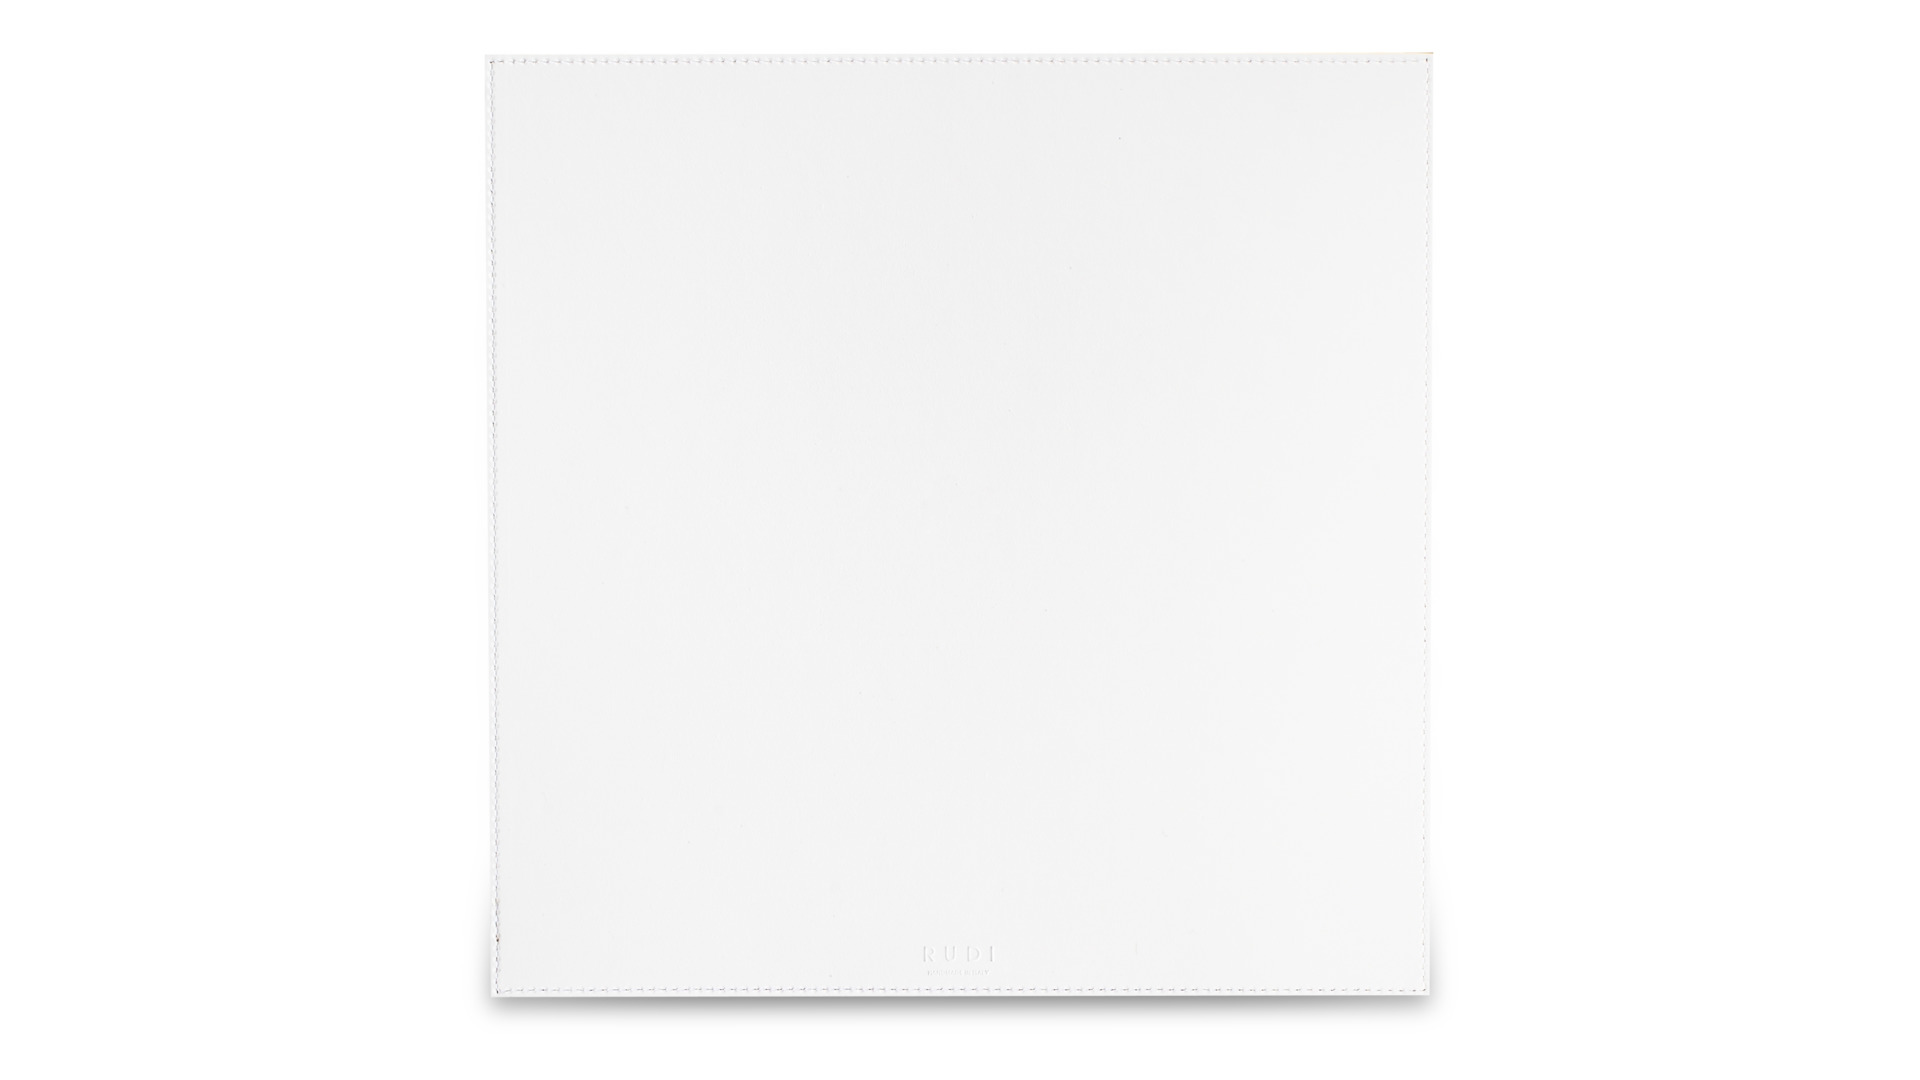 Салфетка подстановочная квадратная Rudi Питагора 34,5х34,5 см, белая